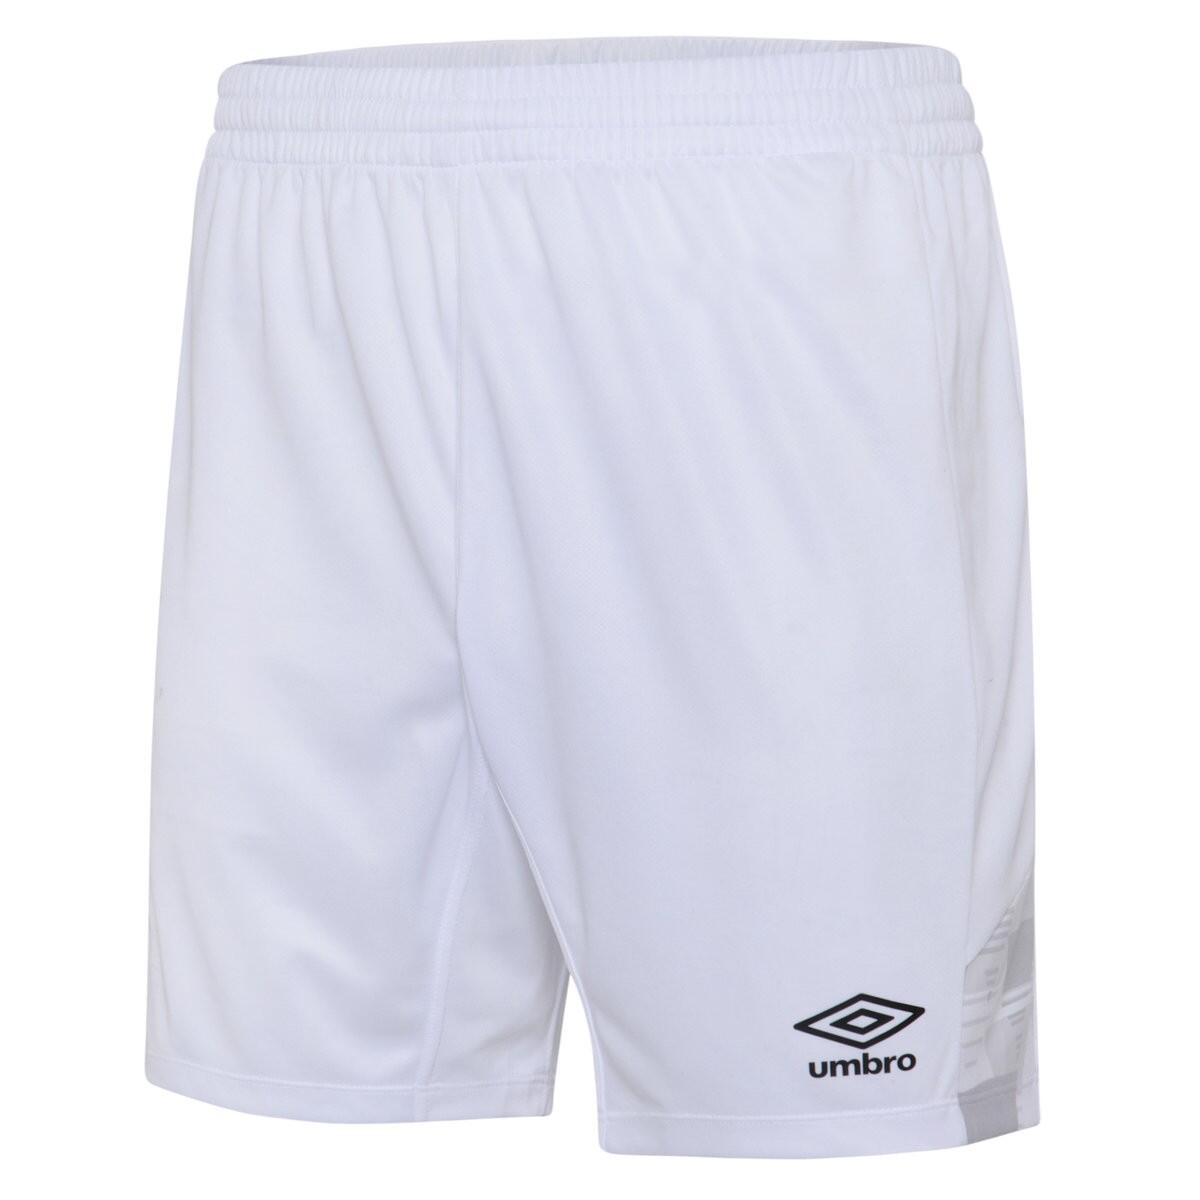 UMBRO Mens Vier Shorts (White)